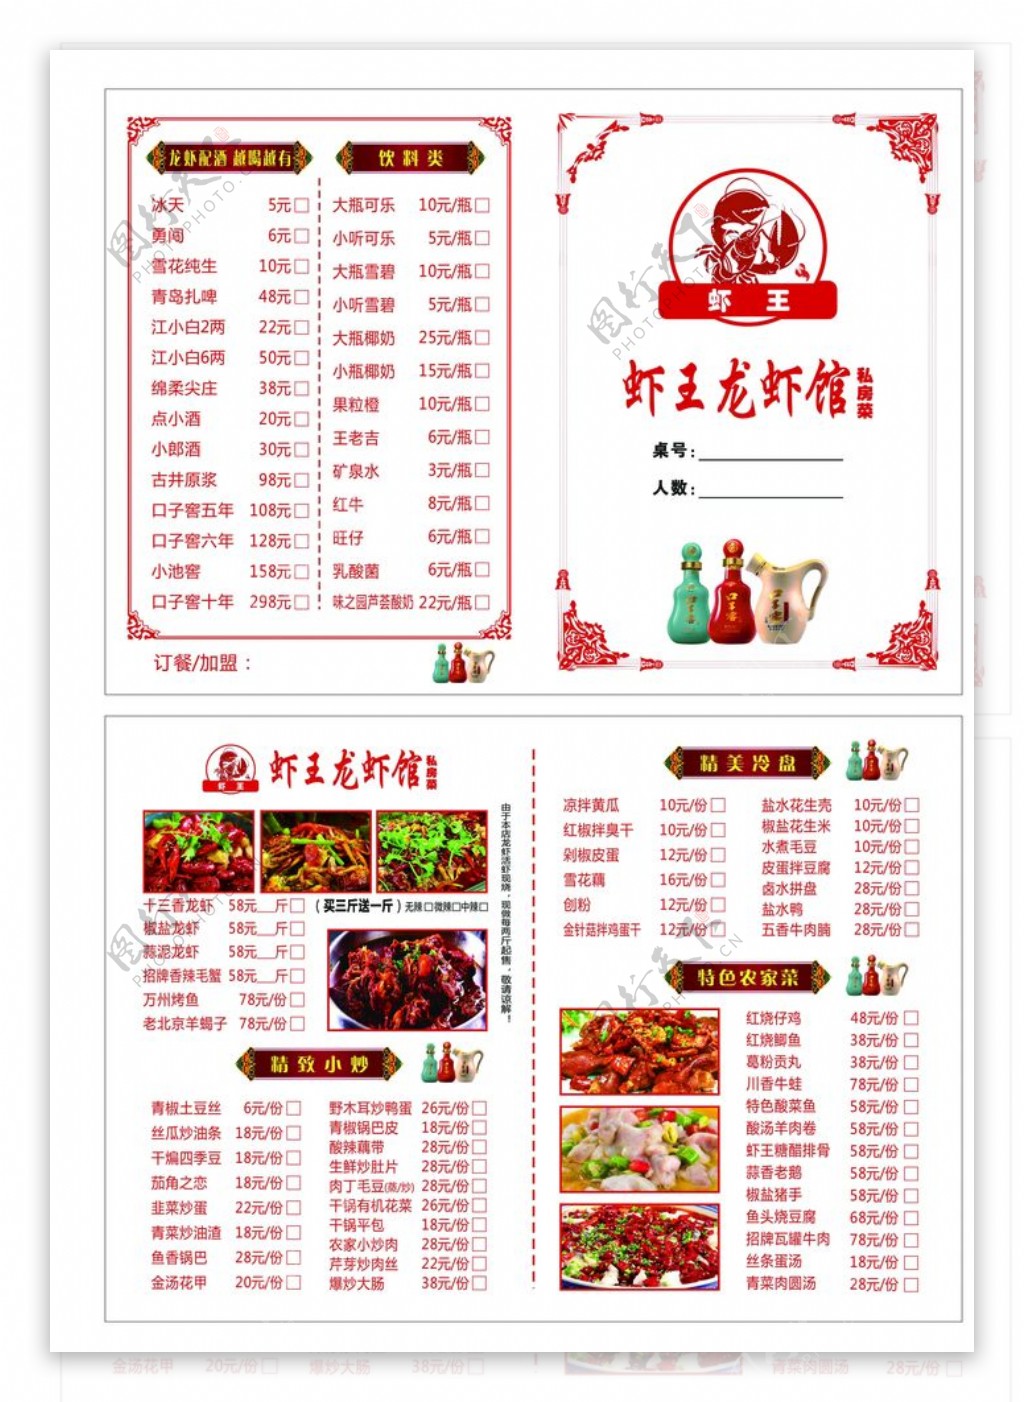 虾王龙虾馆菜单